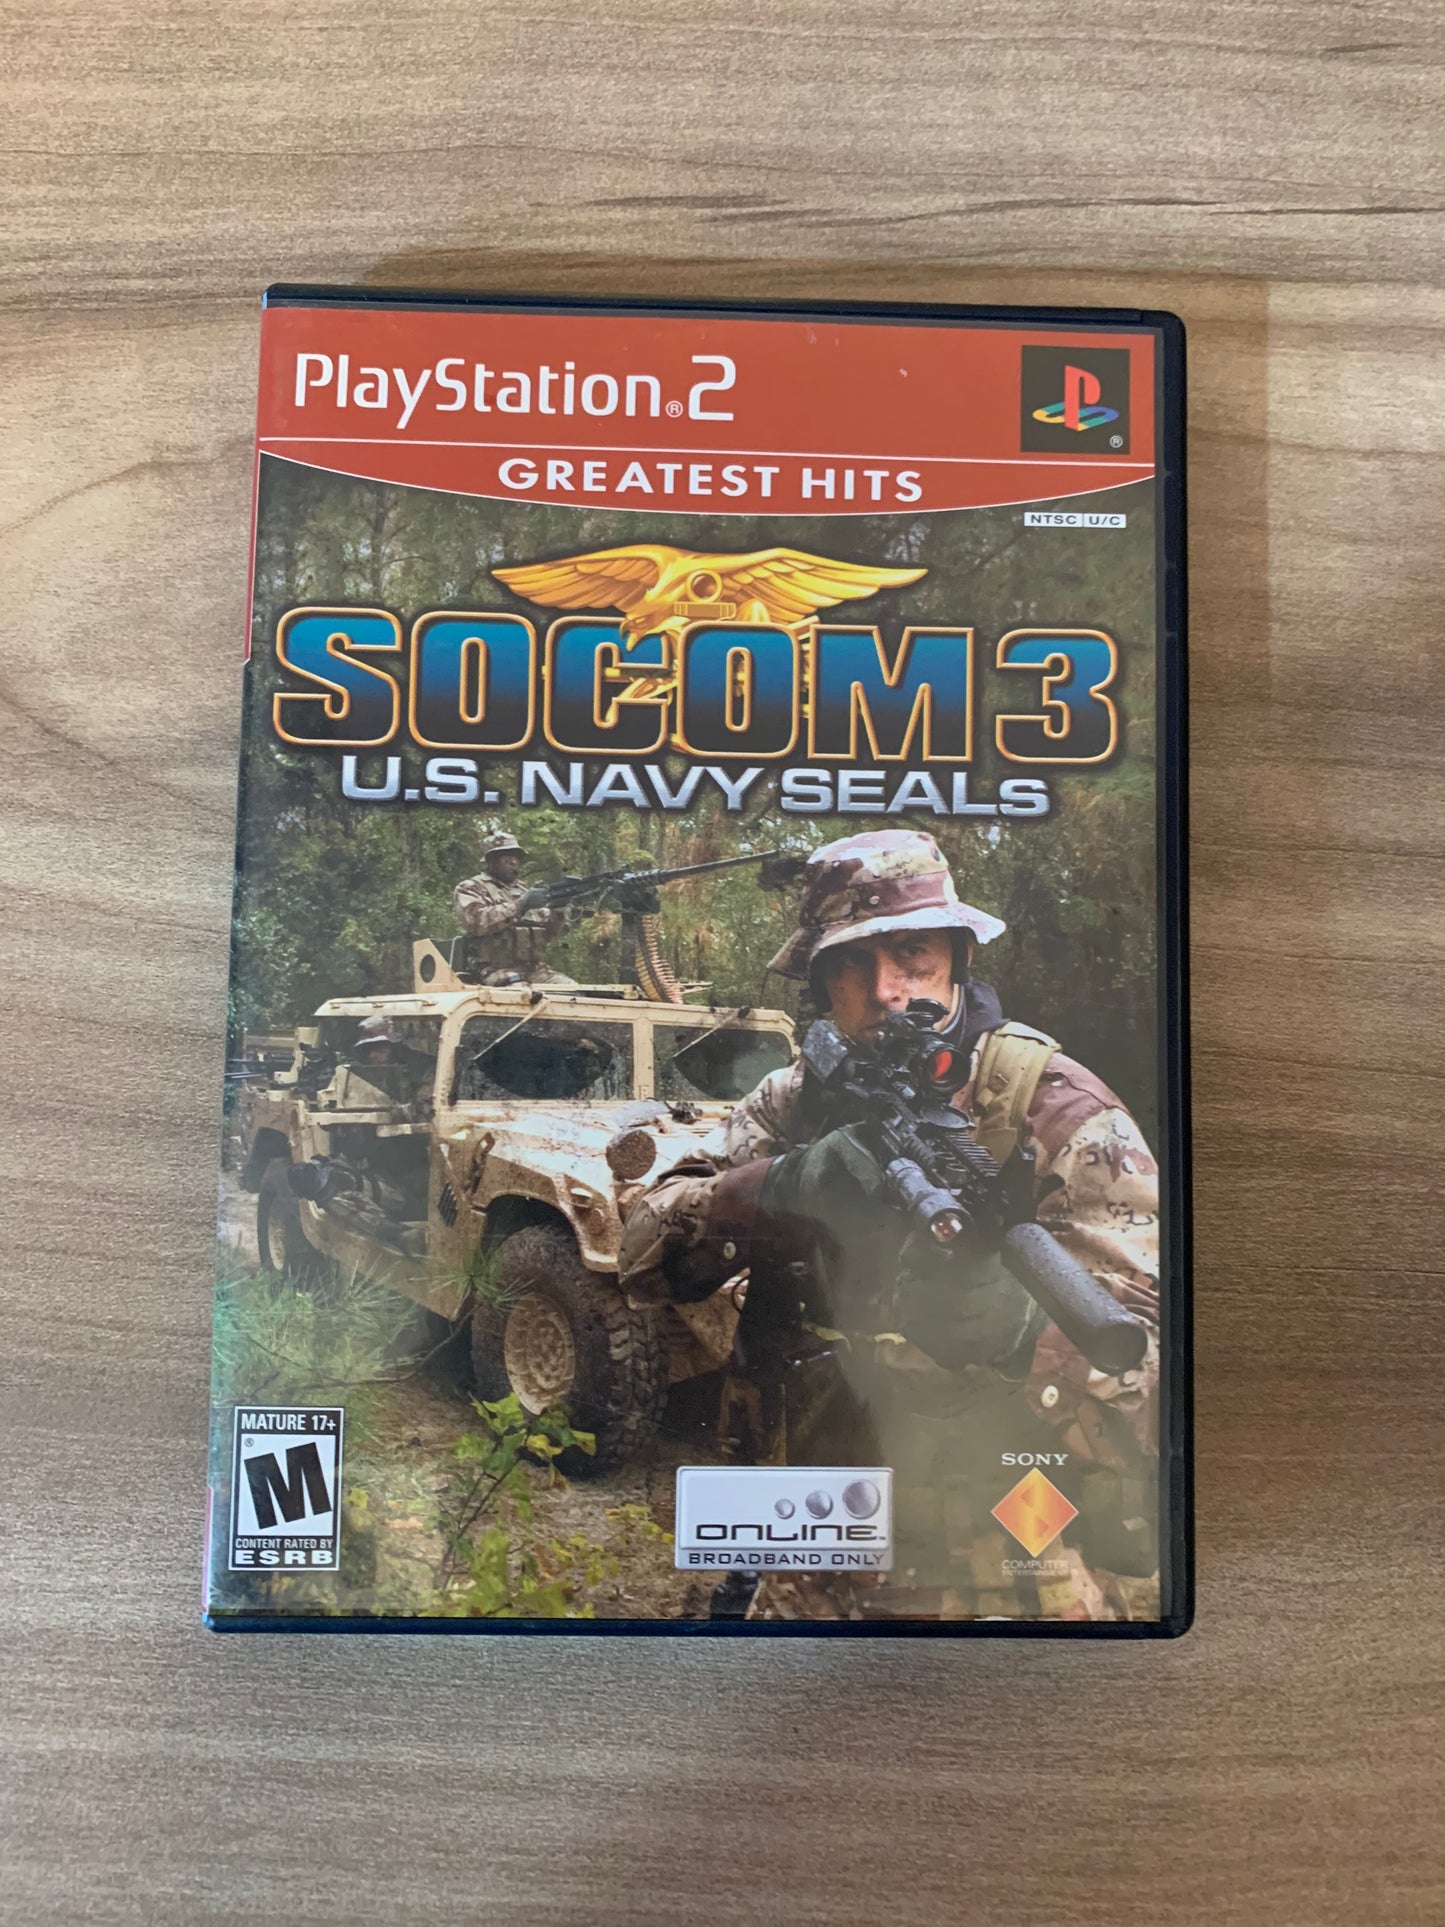 SONY PLAYSTATiON 2 [PS2] | SOCOM 3 U.S. NAVY SEALS | GREATEST HiTS